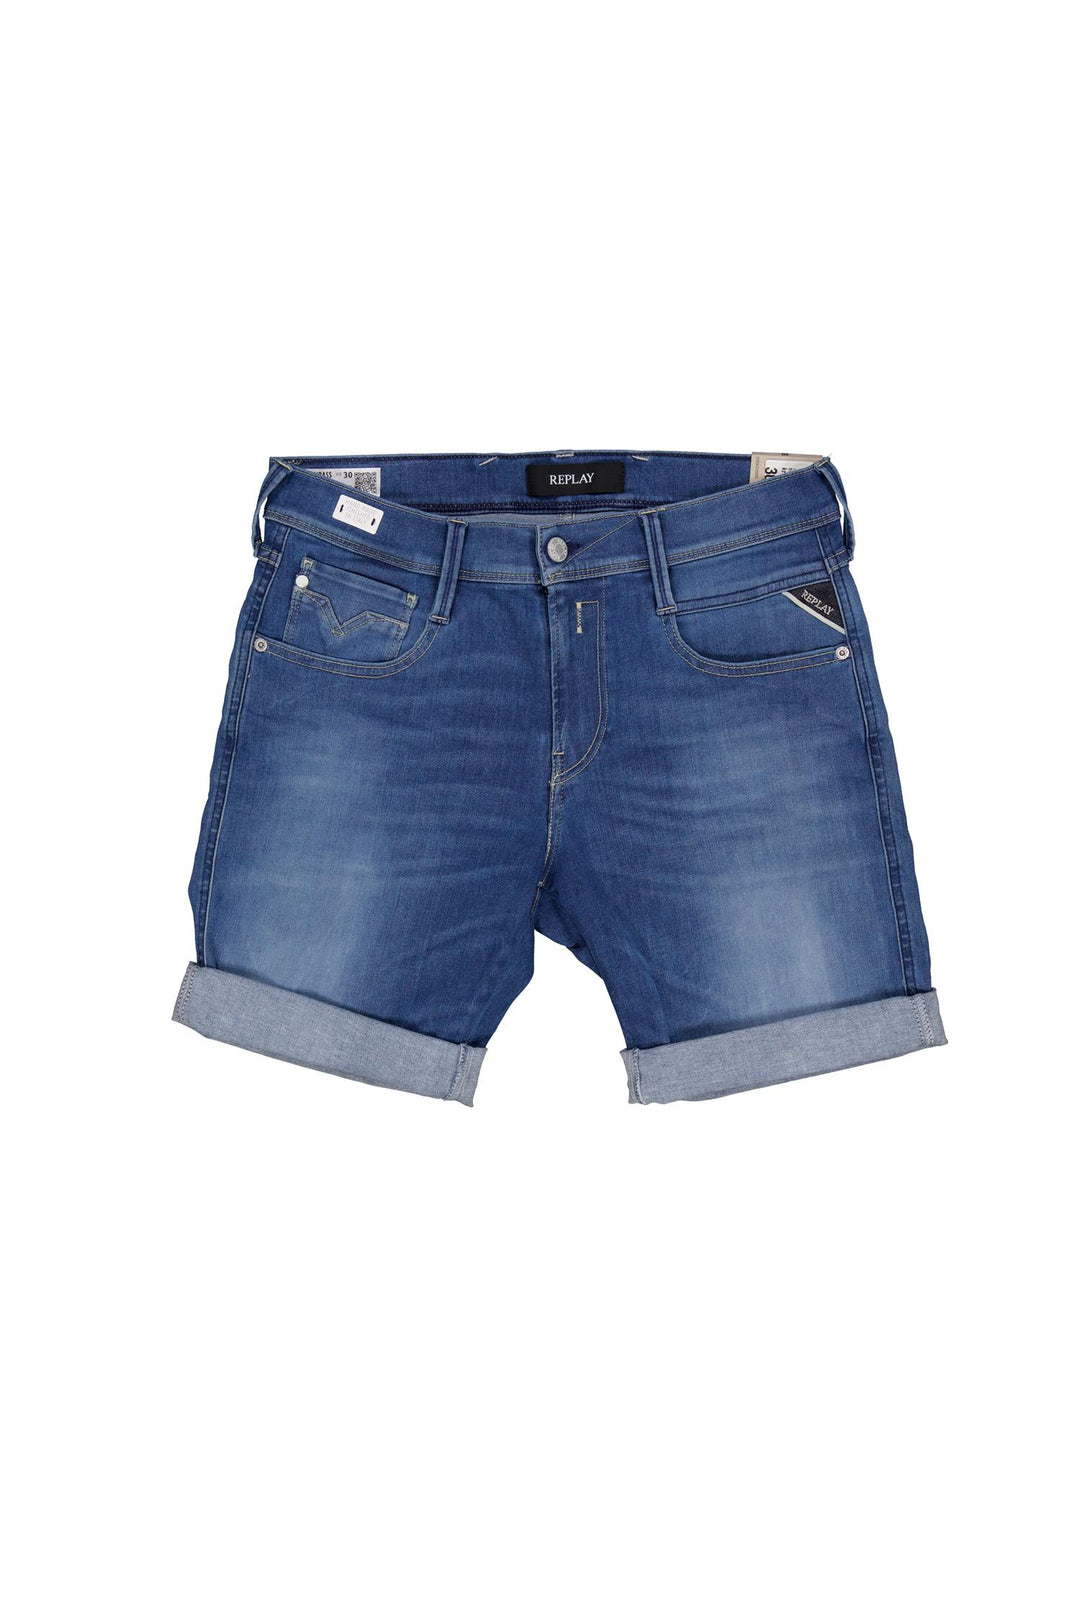 New Anbass Short Denim Blue-Shorts-Bogartstore